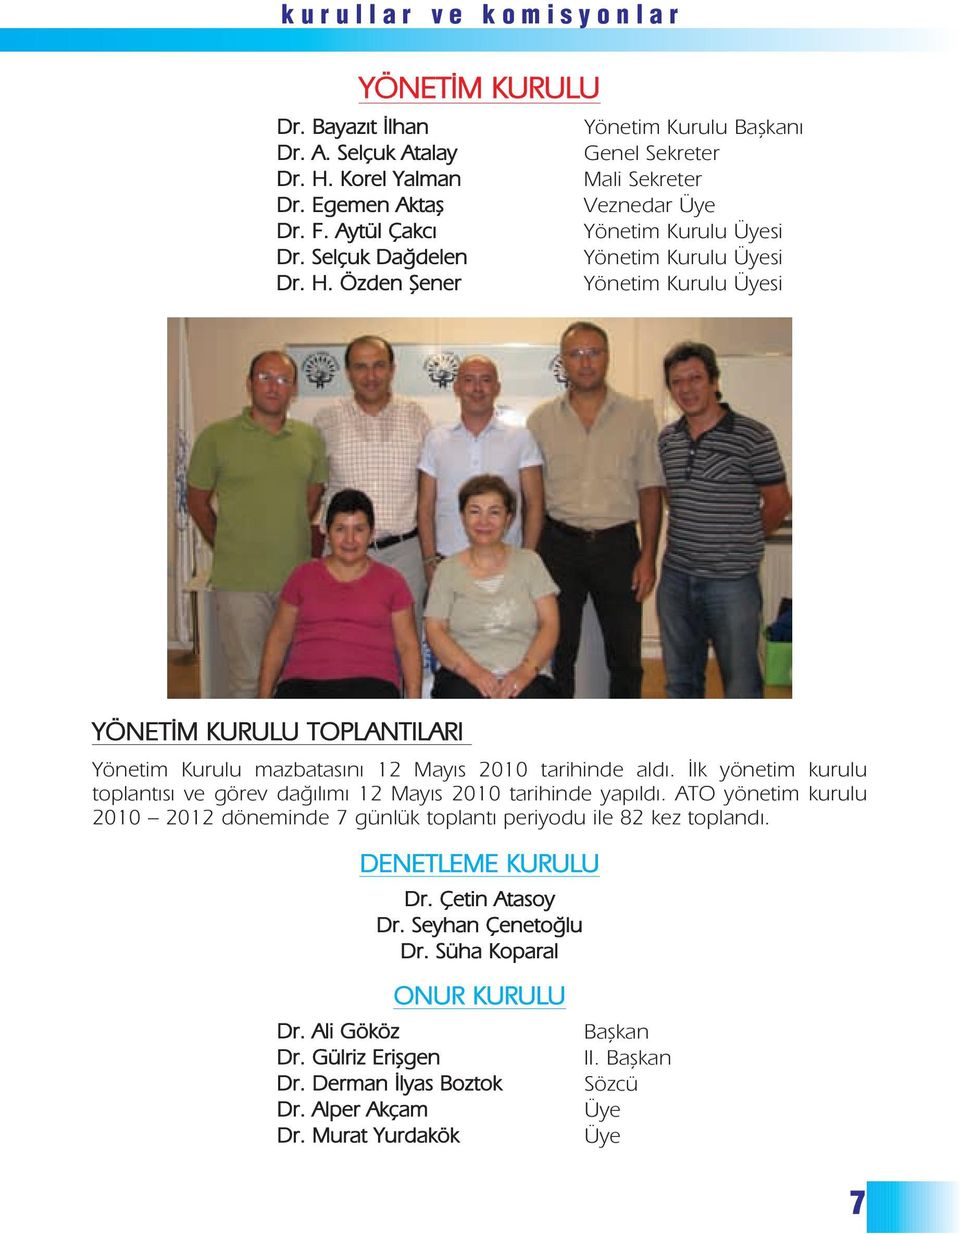 Özden fiener Yönetim Kurulu Üyesi YÖNET M KURULU TOPLANTILARI Yönetim Kurulu mazbatasını 12 Mayıs 2010 tarihinde aldı.